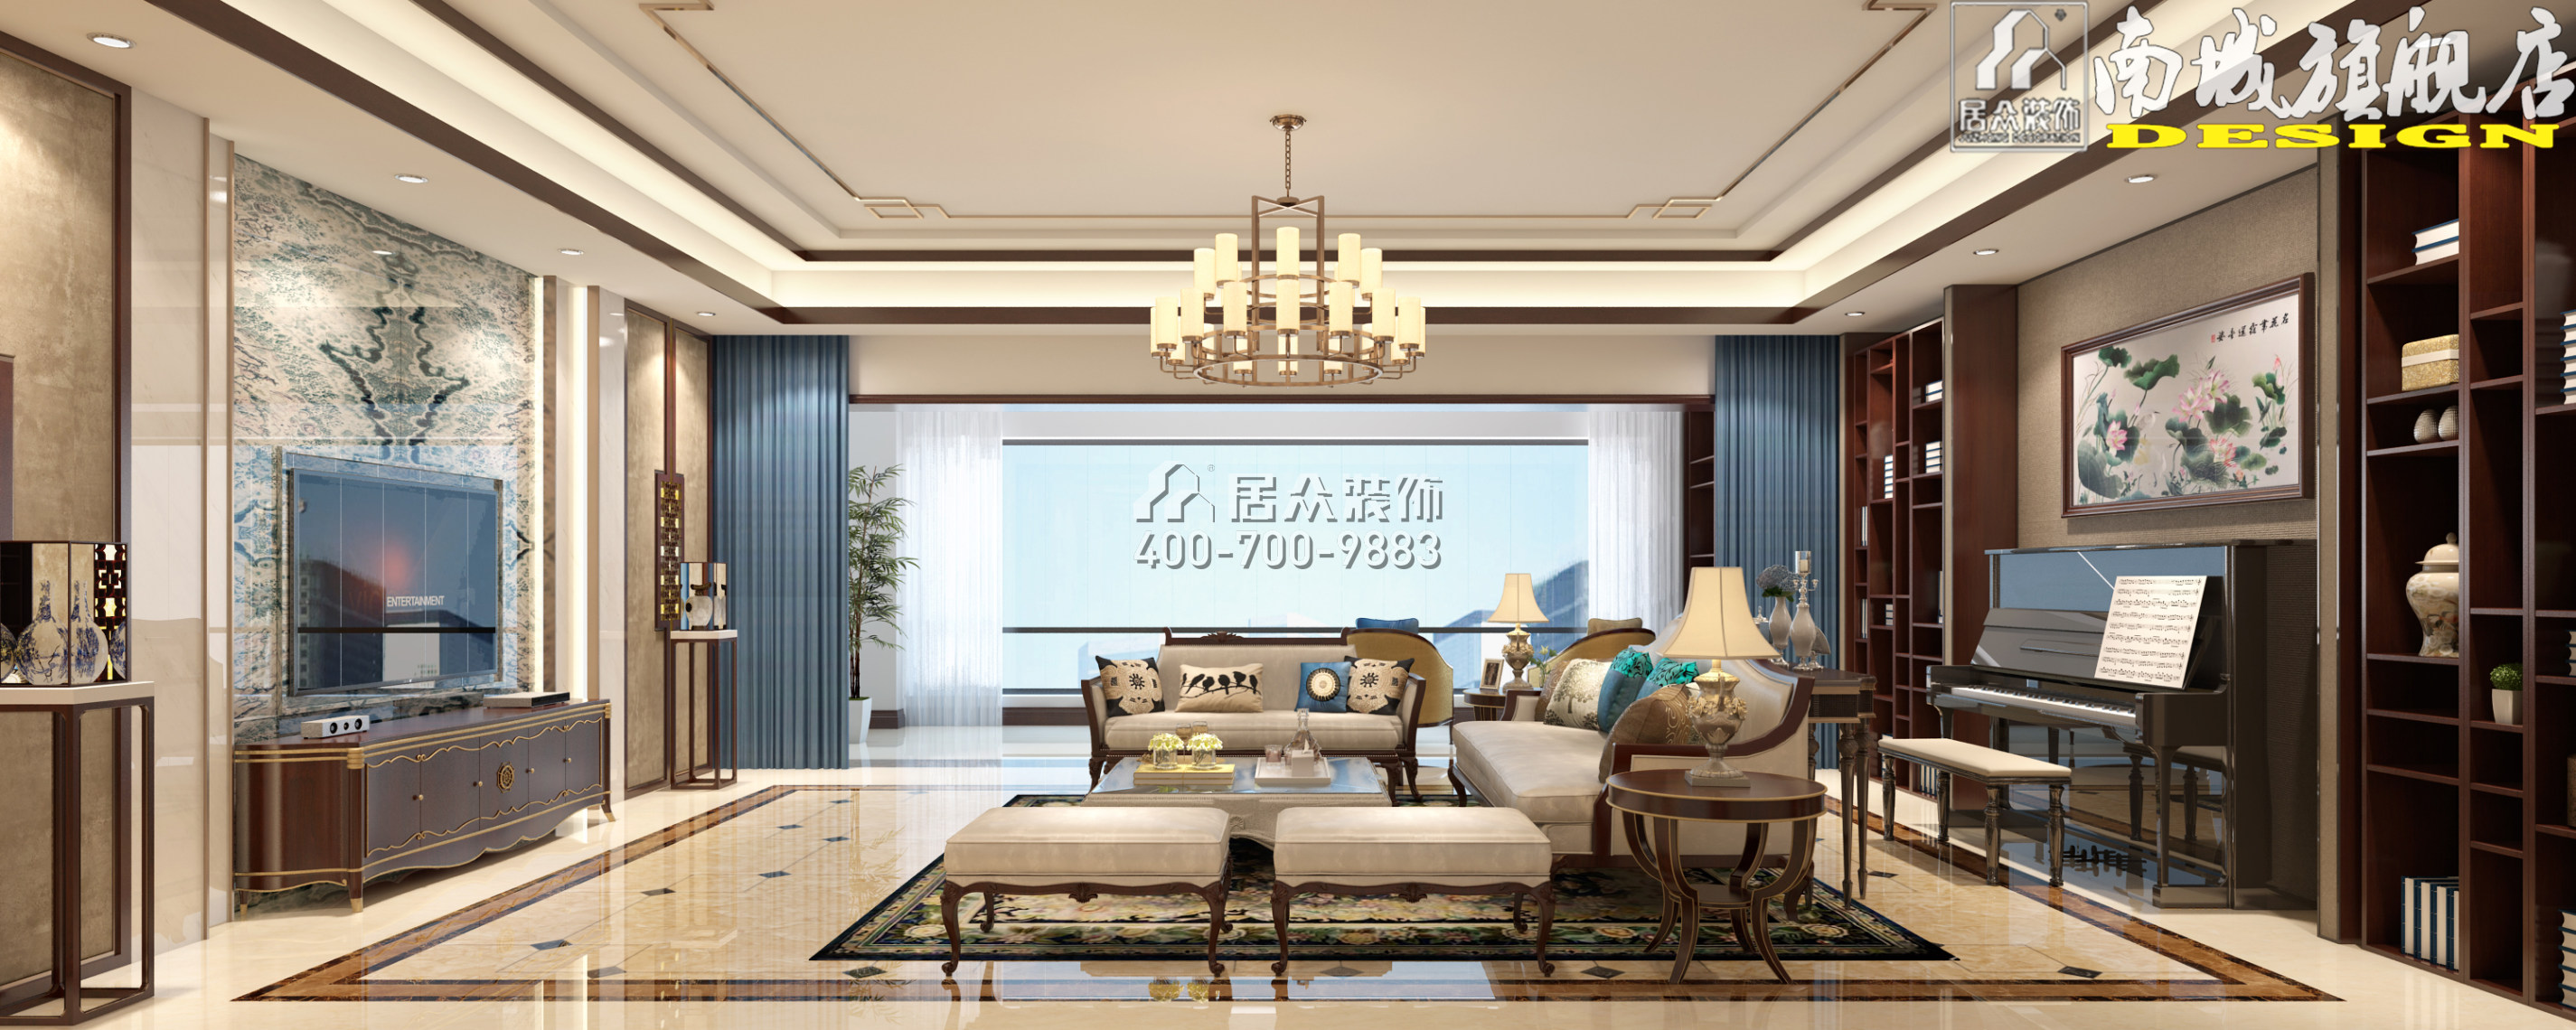 碧桂园天玺弯406平方米中式风格平层户型客厅装修效果图